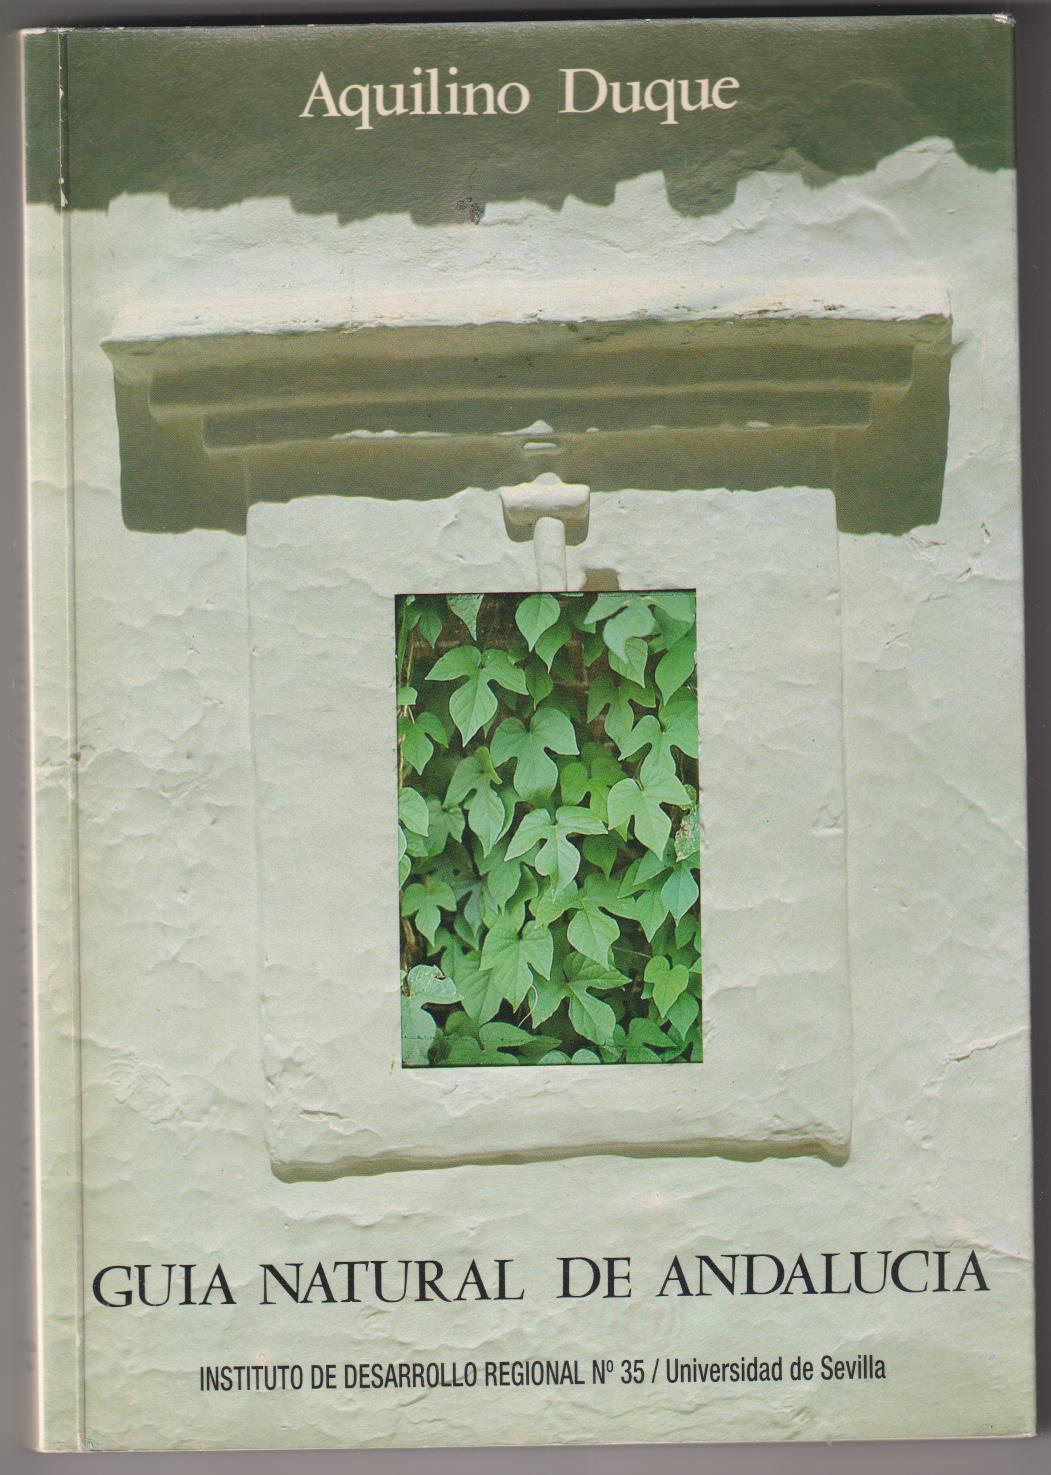 Aquilino Duque. Guía natural de Aqndalucía. Universidad de Sevilla 1986